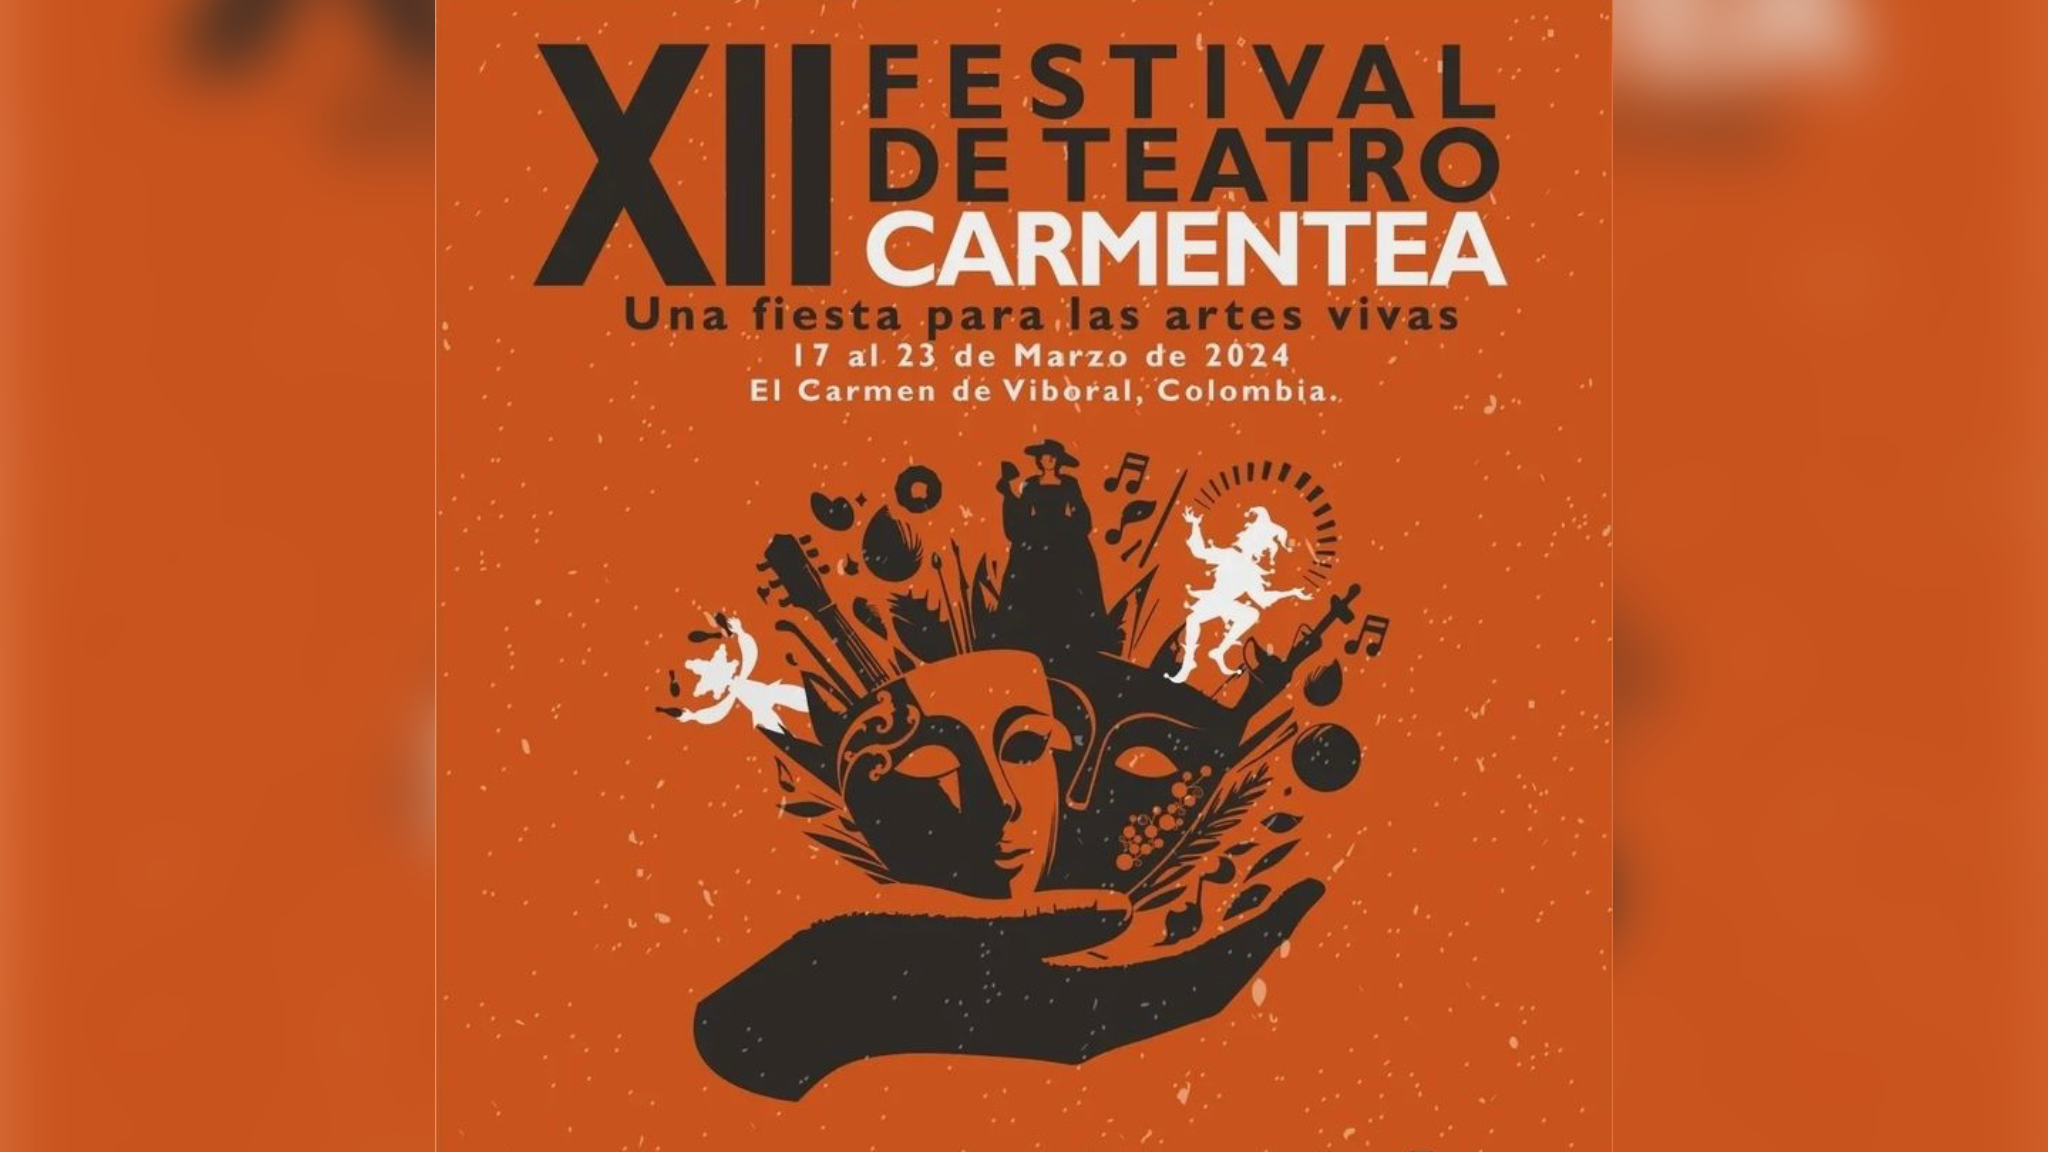 Carmentea: esta es la agenda para el festival de teatro en El Carmen